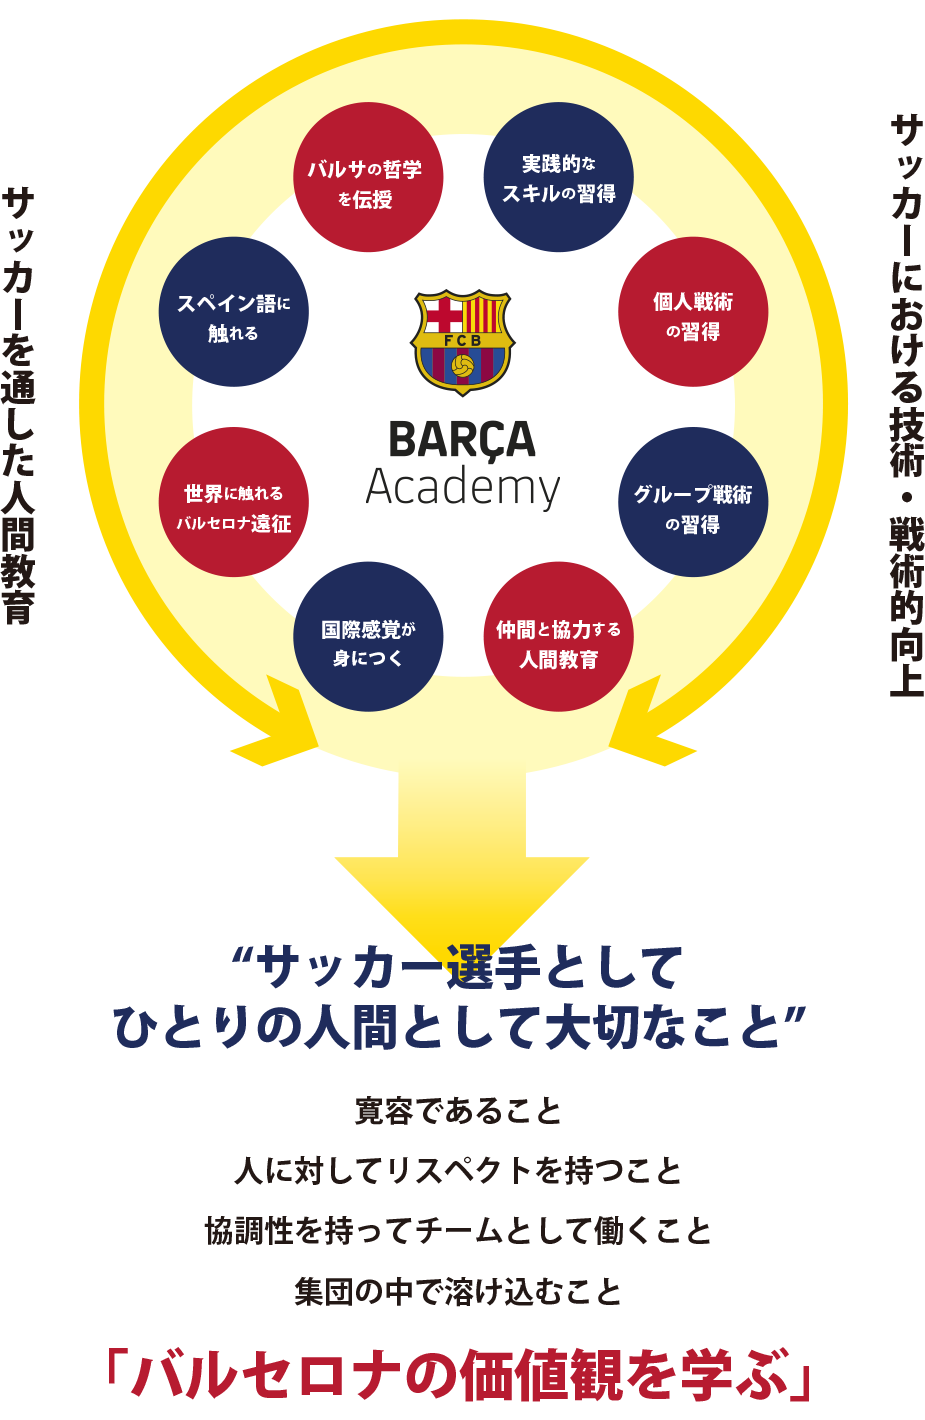 新横浜 にバルサアカデミー開校 株式会社amazing Sports Lab Japanのプレスリリース